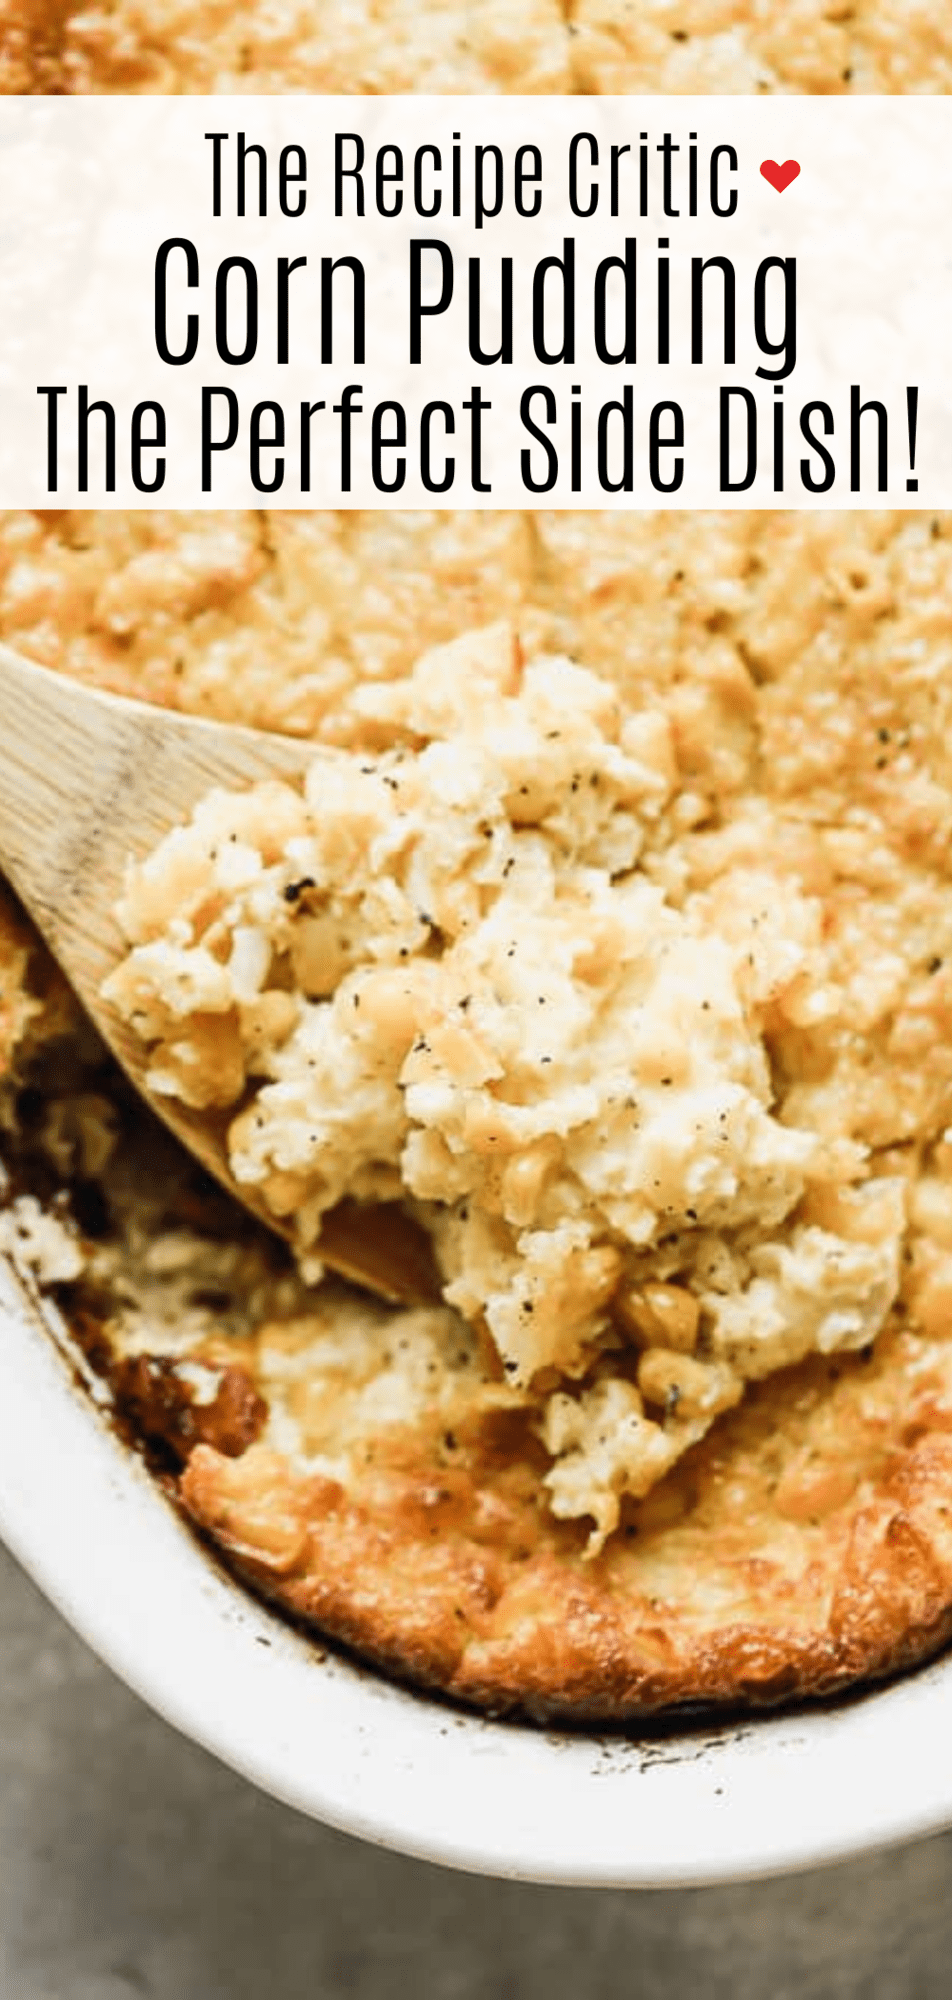 Easy Southern Corn Pudding Casserole Recipe | therecipecritic